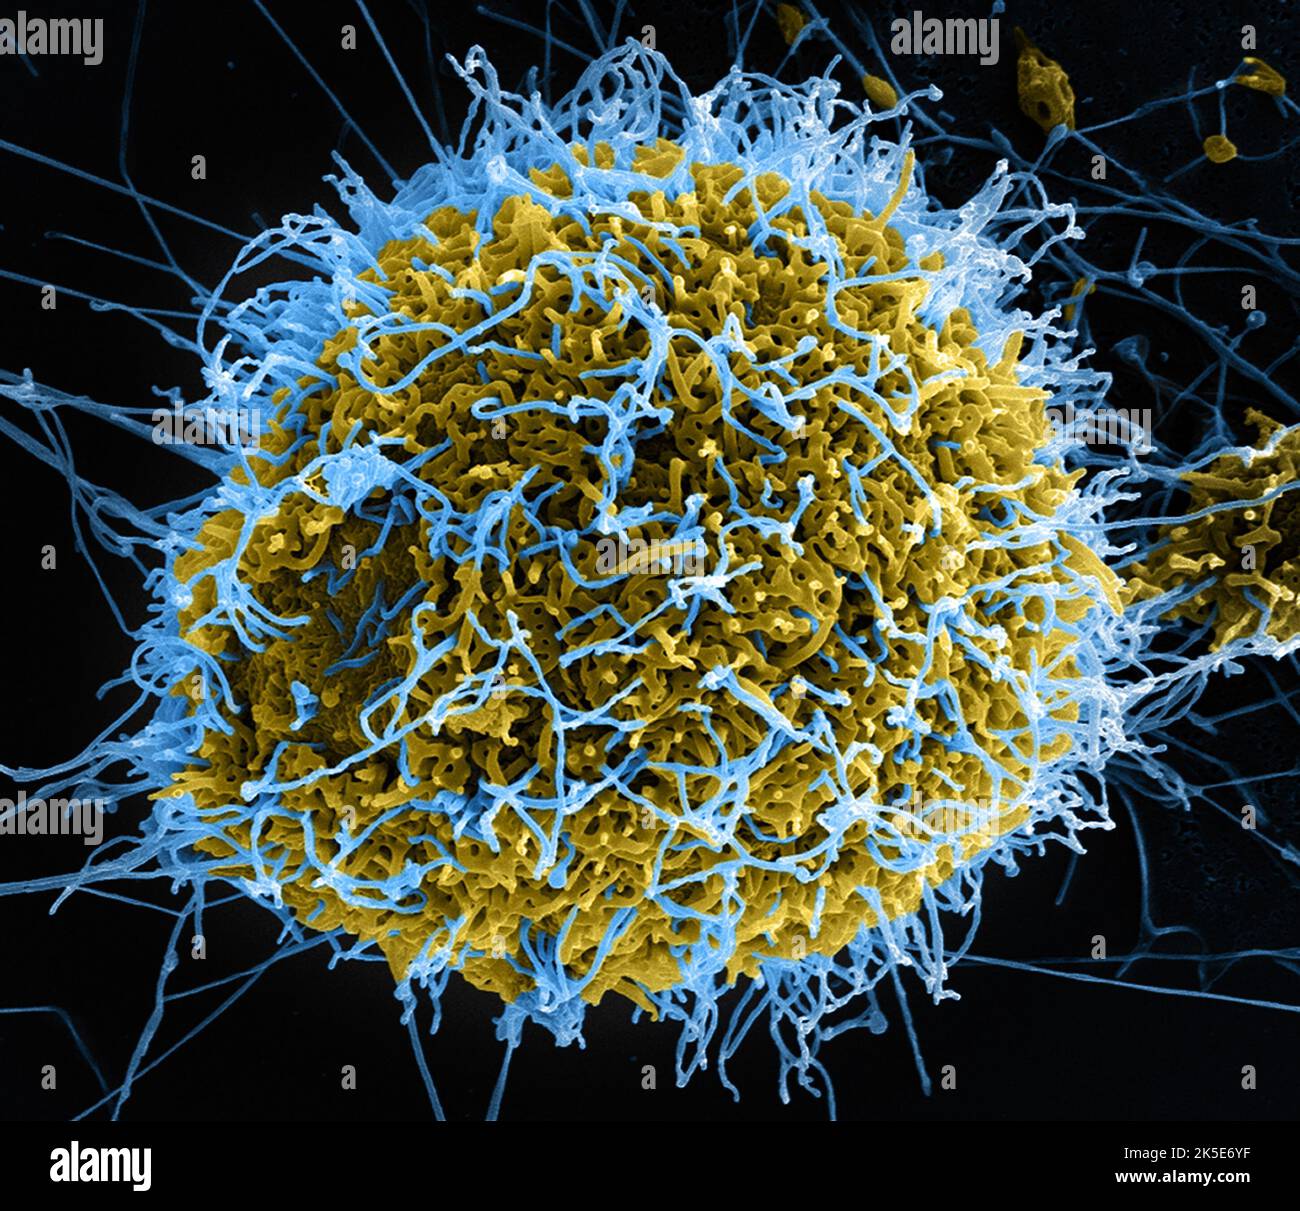 Micrographe électronique à balayage colorisé des particules filamenteuses du virus Ebola (bleu) bourgeonnant d'une cellule VERO E6 infectée de façon chronique (jaune-vert). Crédit : Institut national des allergies et des maladies infectieuses, NIH Banque D'Images